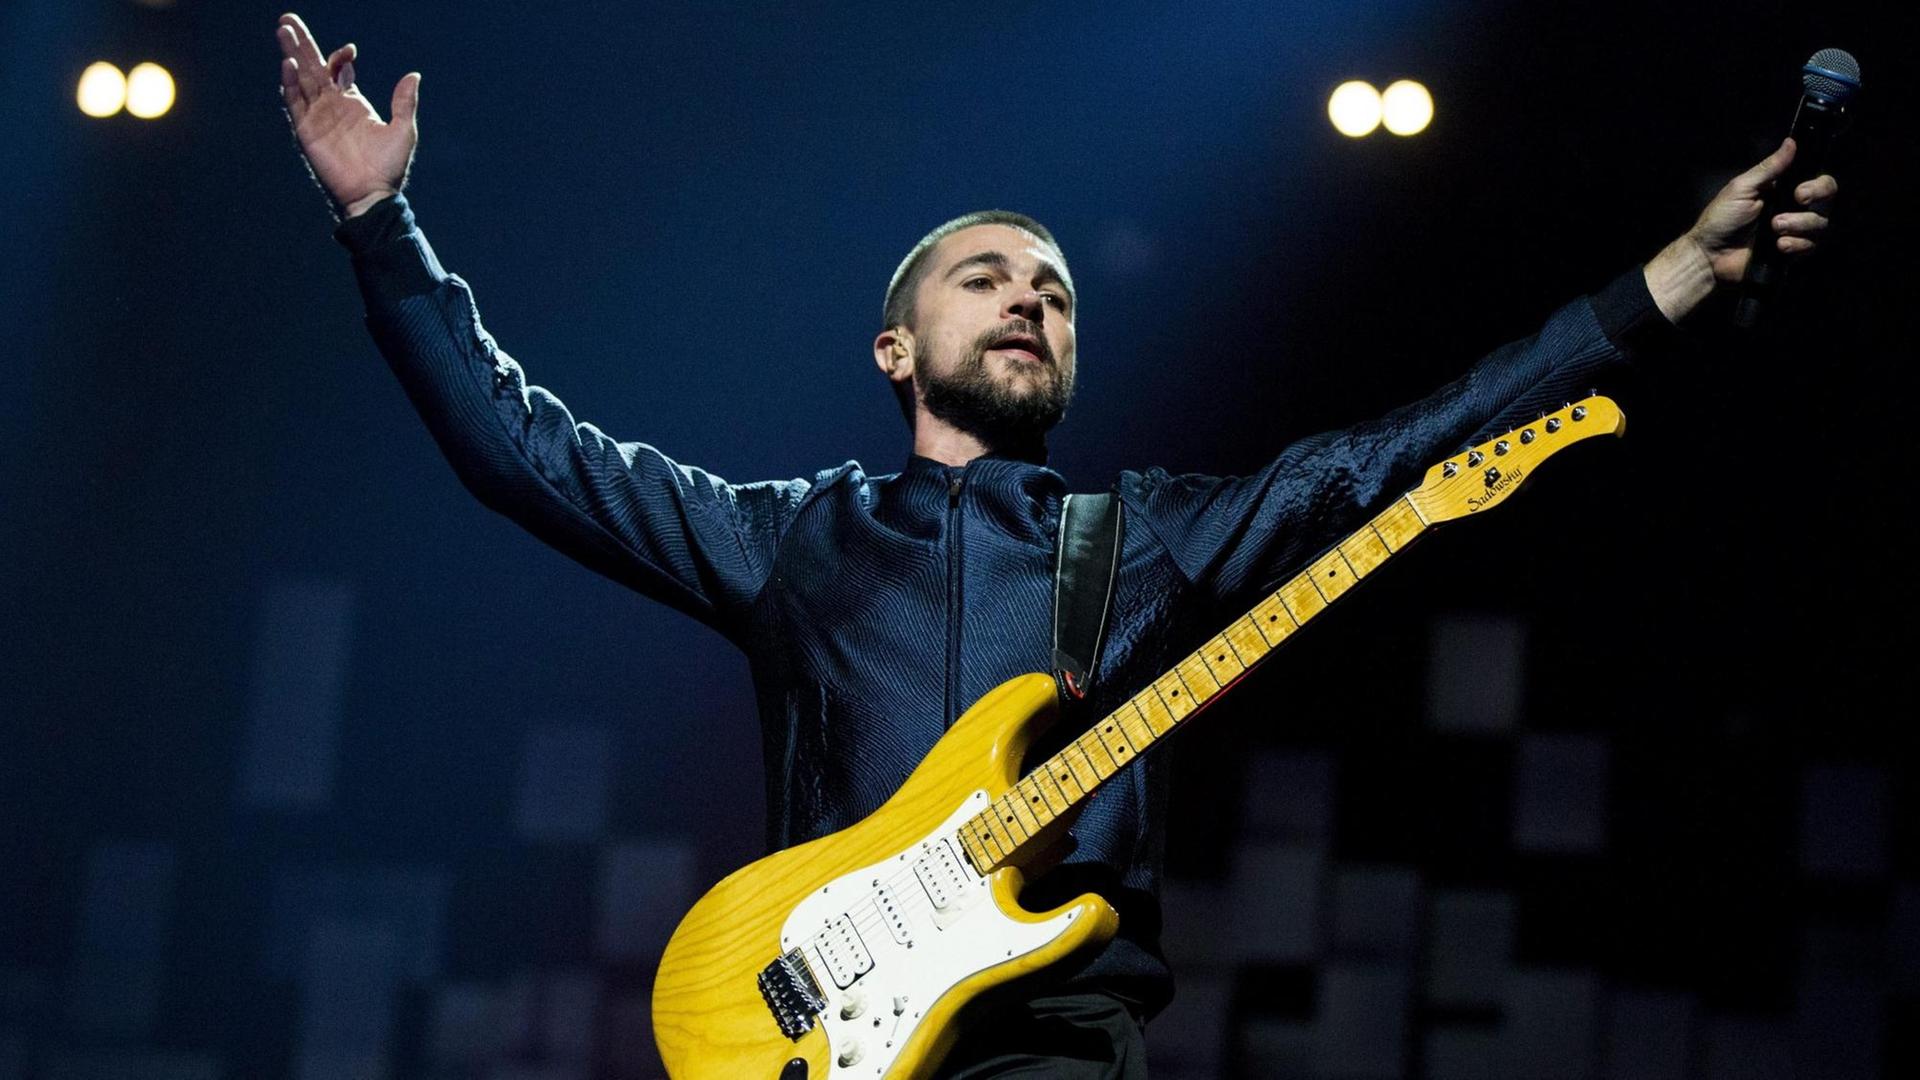 Juanes auf der Bühne, reißt die Arme hoch und trägt eine gelbe E-Gitarre